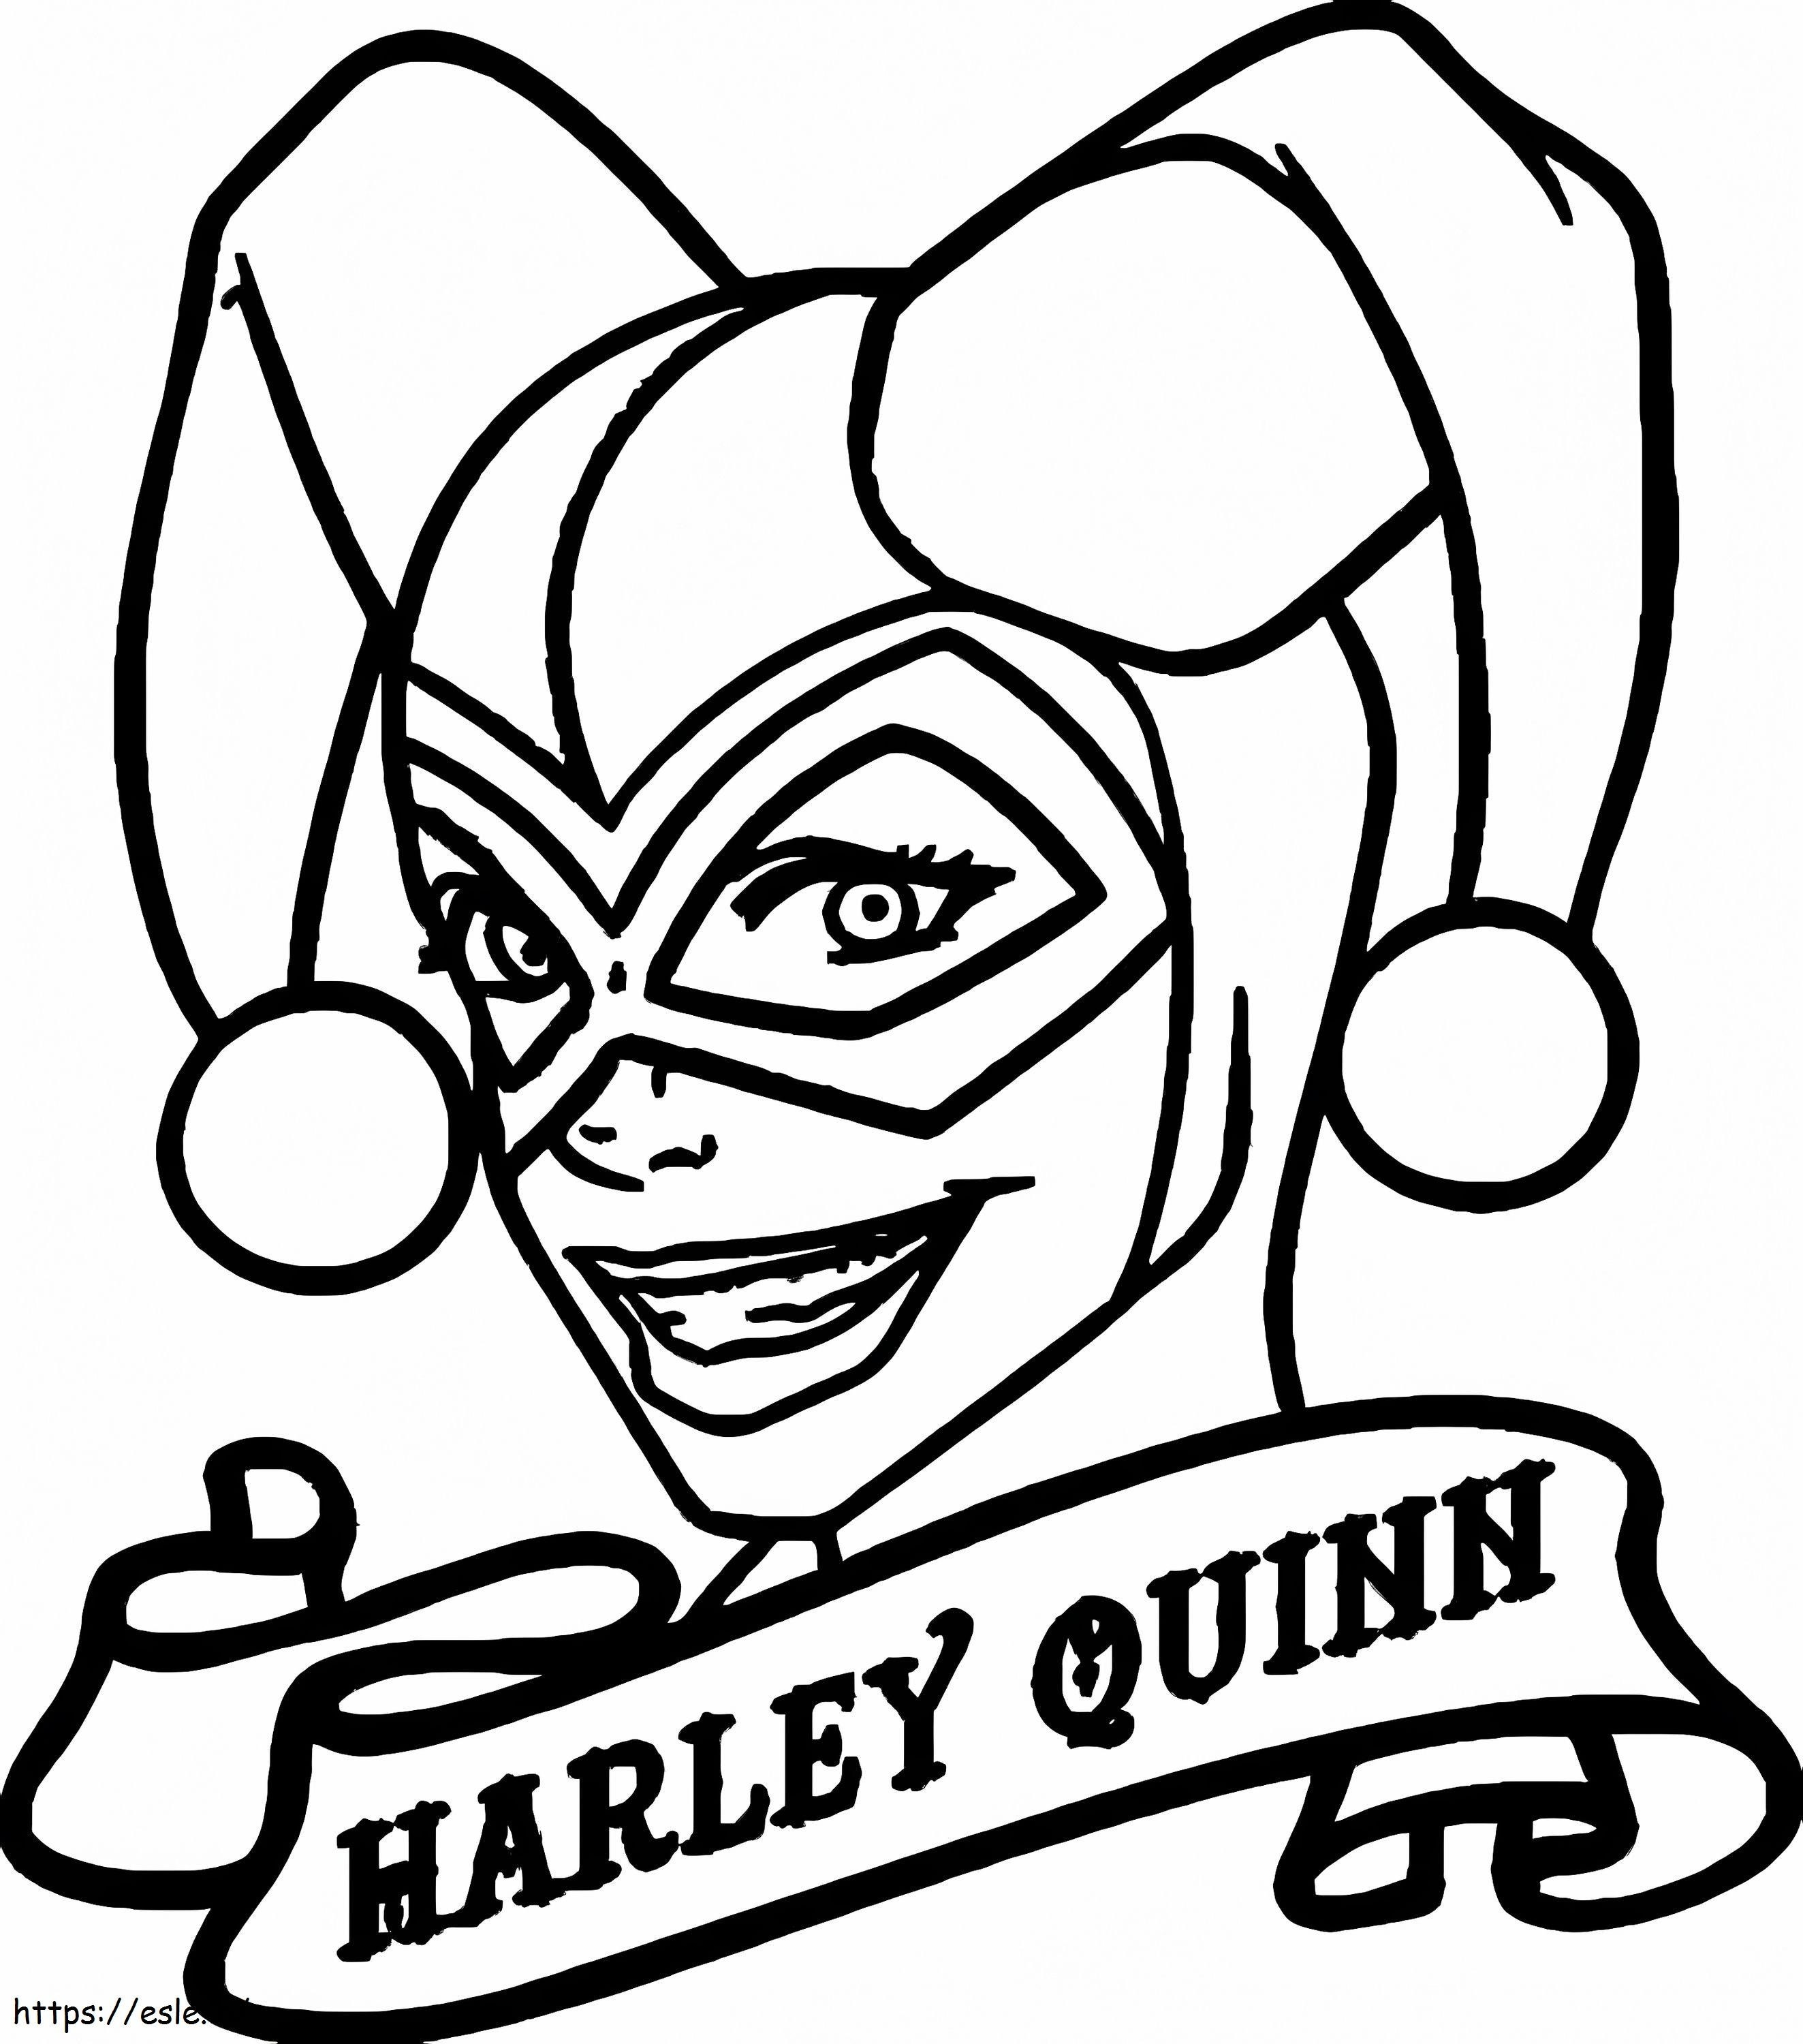 Disegna la testa di Harley Quinn da colorare